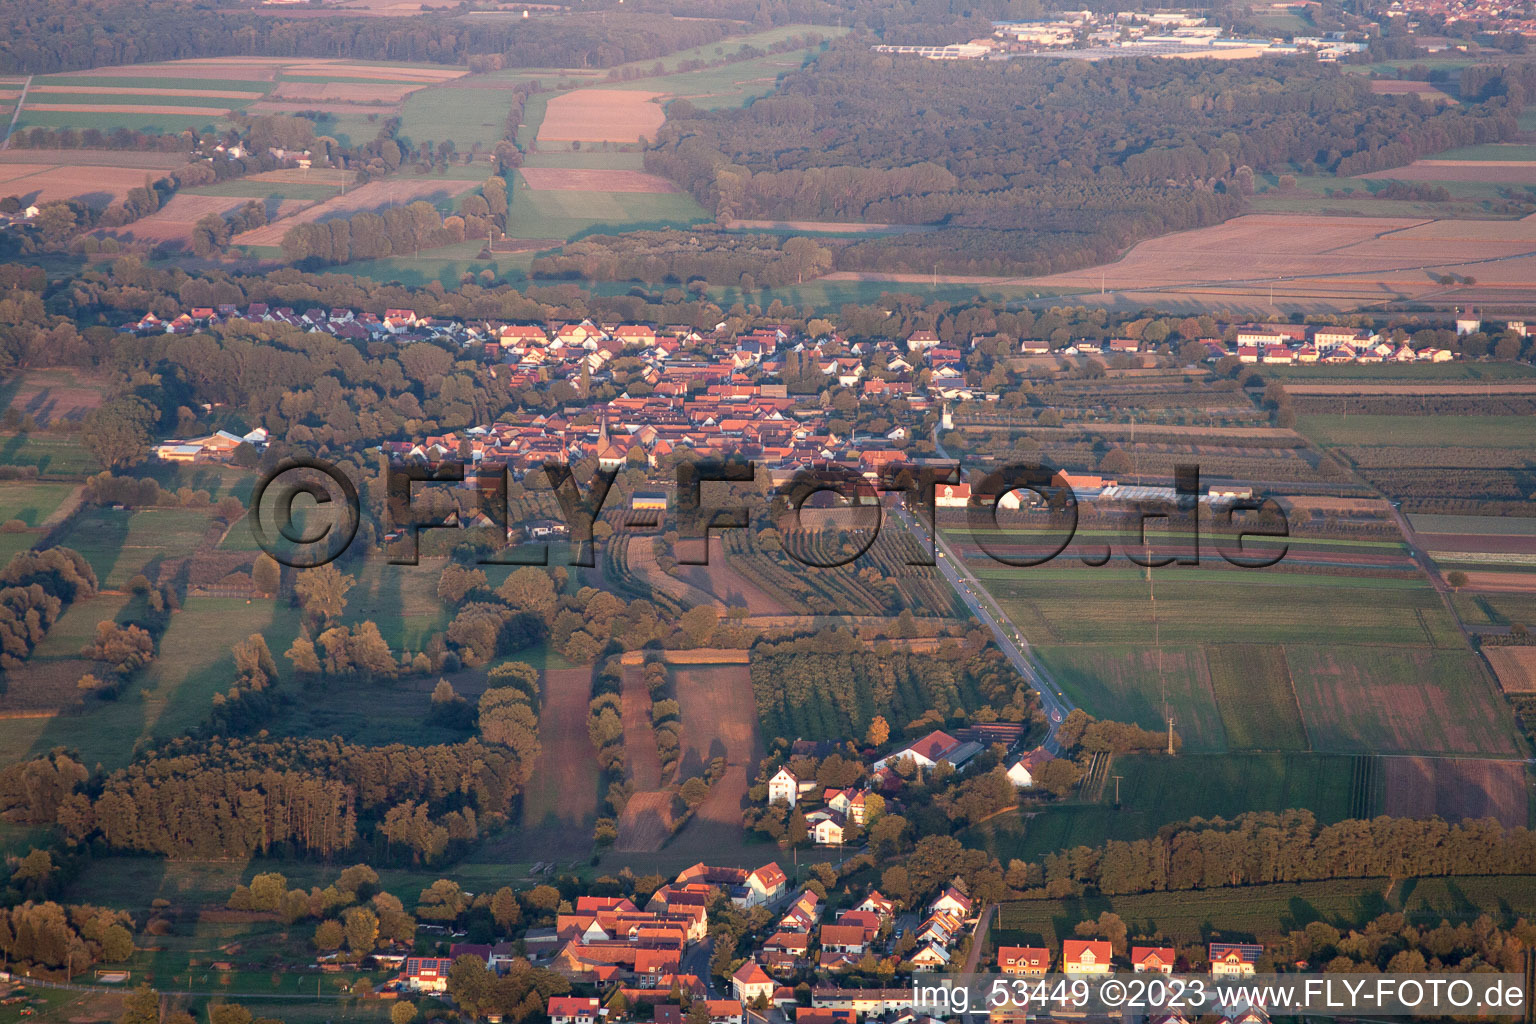 Winden im Bundesland Rheinland-Pfalz, Deutschland aus der Luft betrachtet